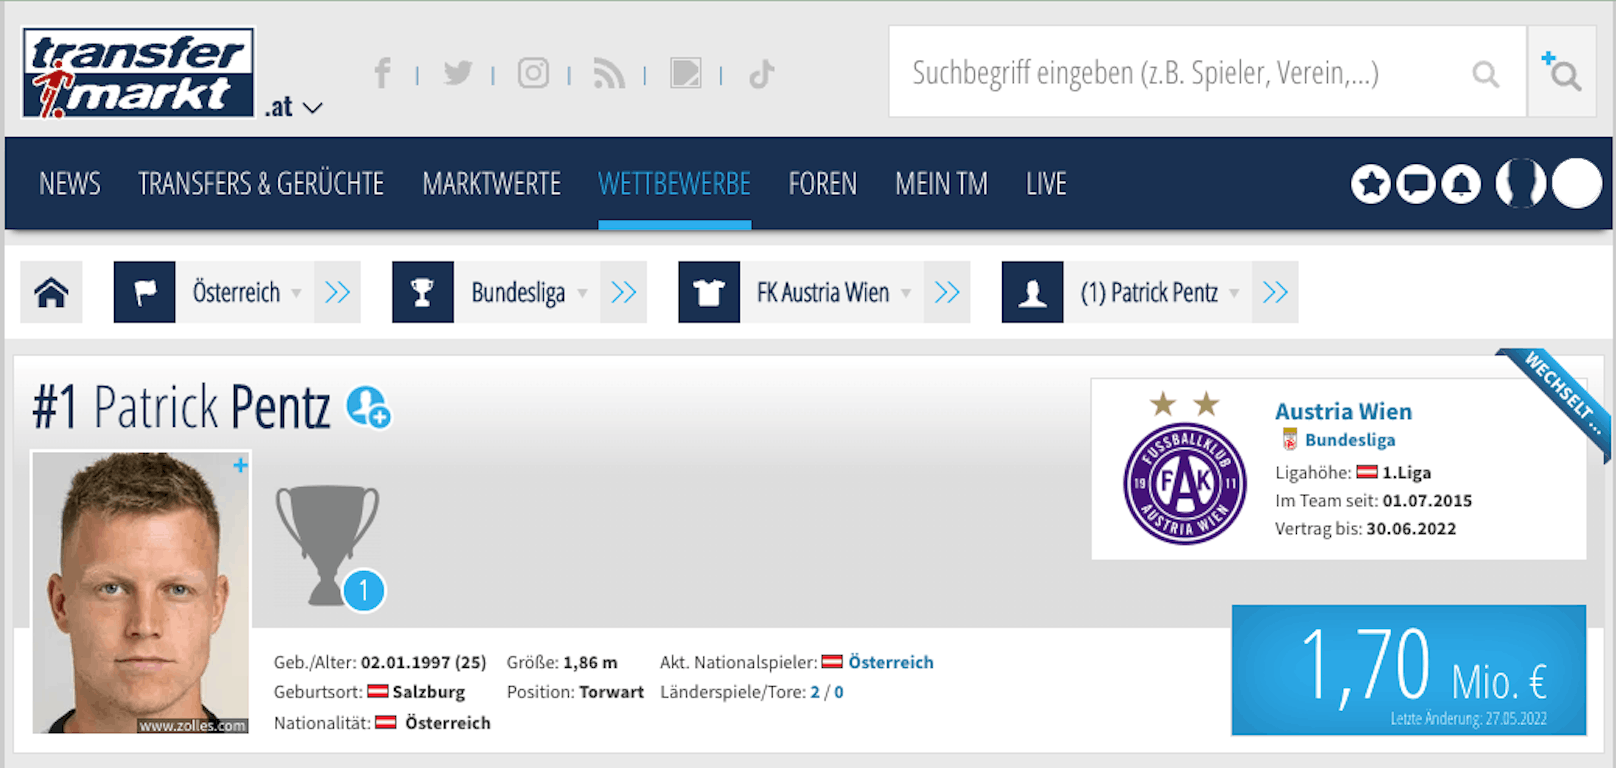 Das Profil von Patrick Pentz auf Transfermarkt.at am 8. Juni, als "Heute" am 7. Juni bei der Bundesliga anfragte, war er noch 1,82 Meter groß.